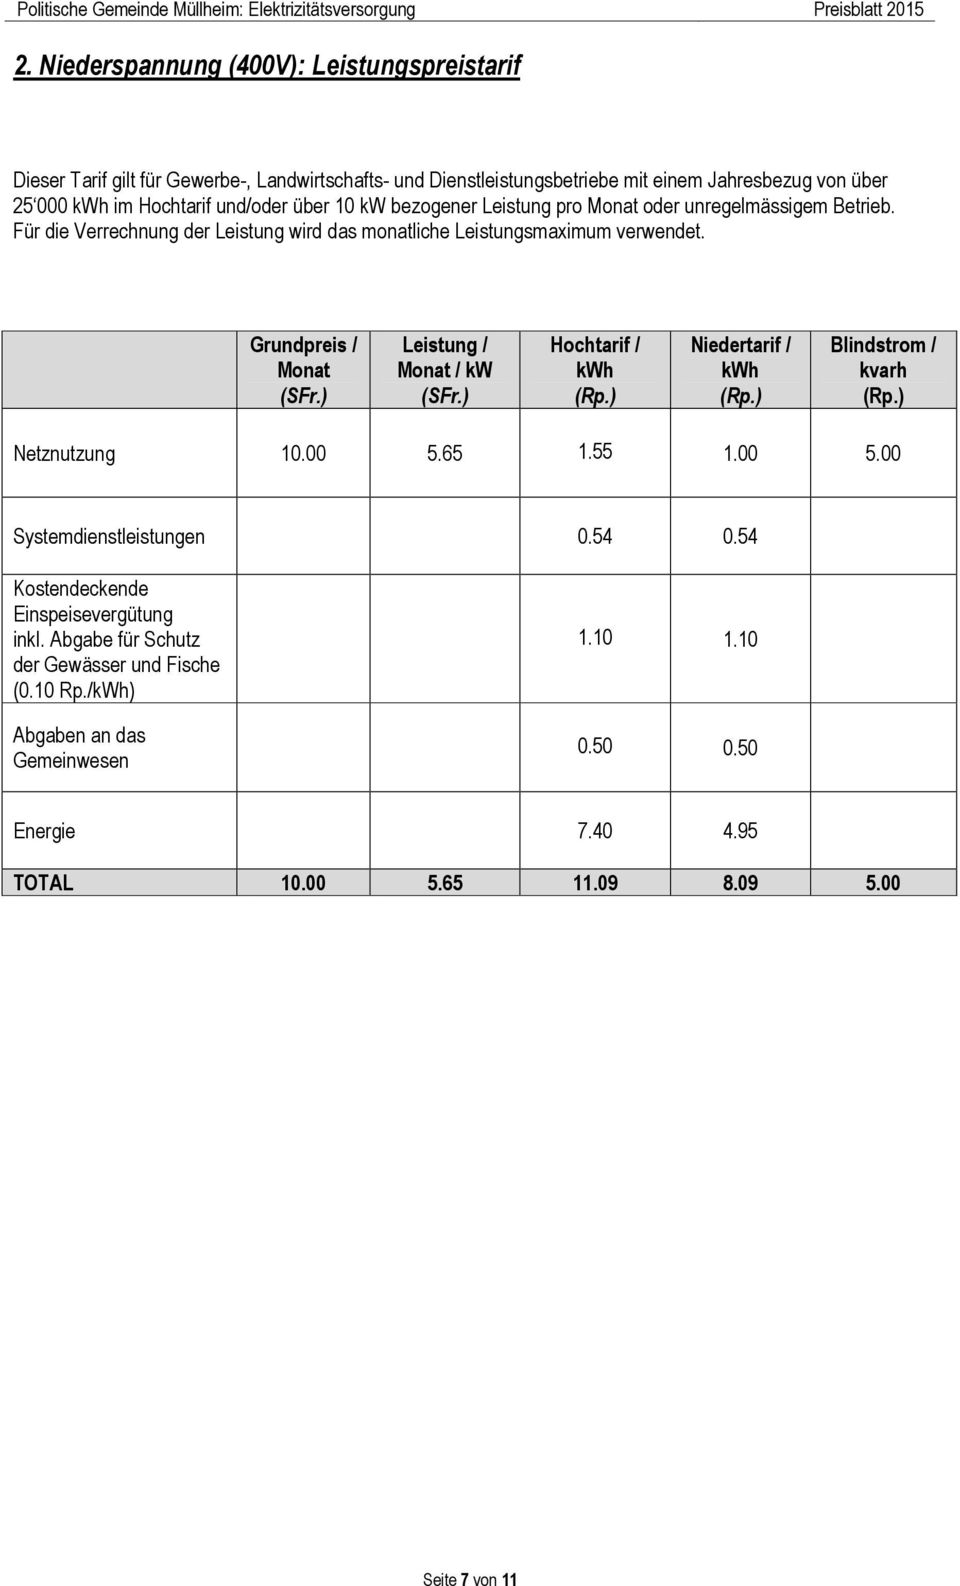 Grundpreis / Monat Leistung / Monat / kw Hochtarif / kwh Niedertarif / kwh Blindstrom / kvarh Netznutzung 10.00 5.65 1.55 1.00 5.00 Systemdienstleistungen 0.54 0.